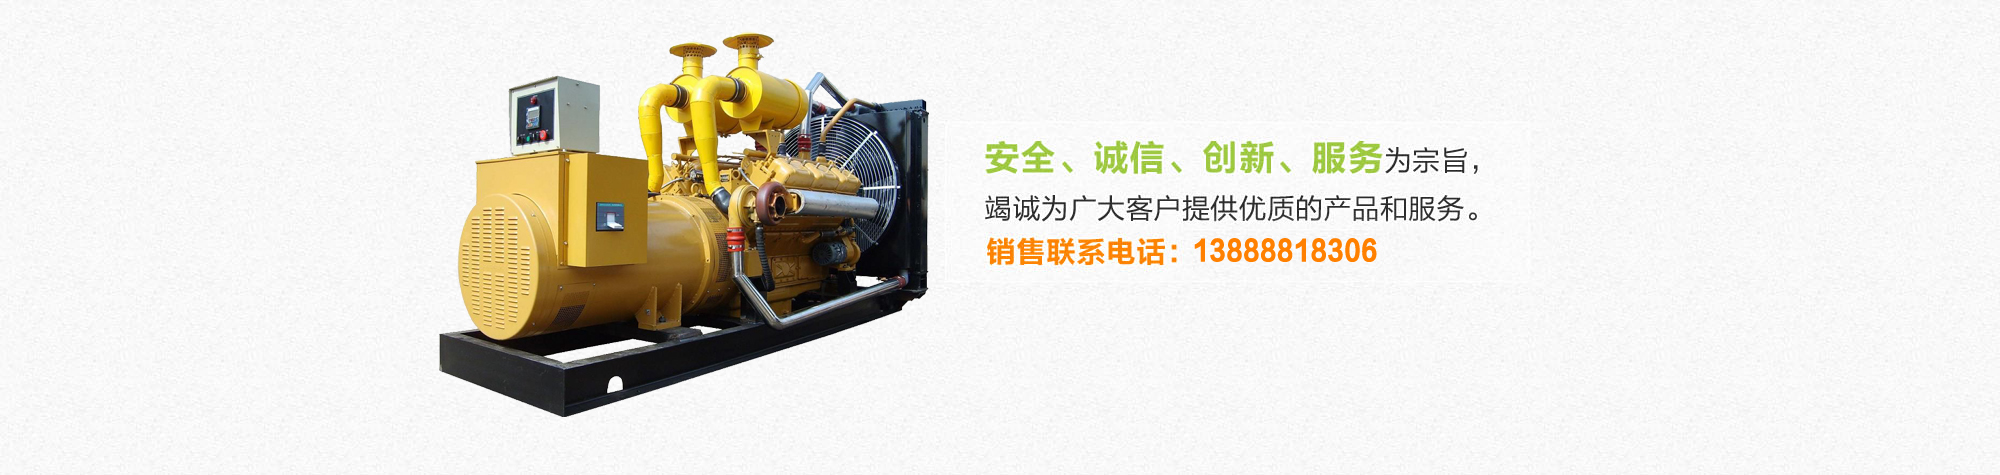 云南玉柴柴油发电机价格最便宜的公司为你讲解柴油发电机组的操作流程